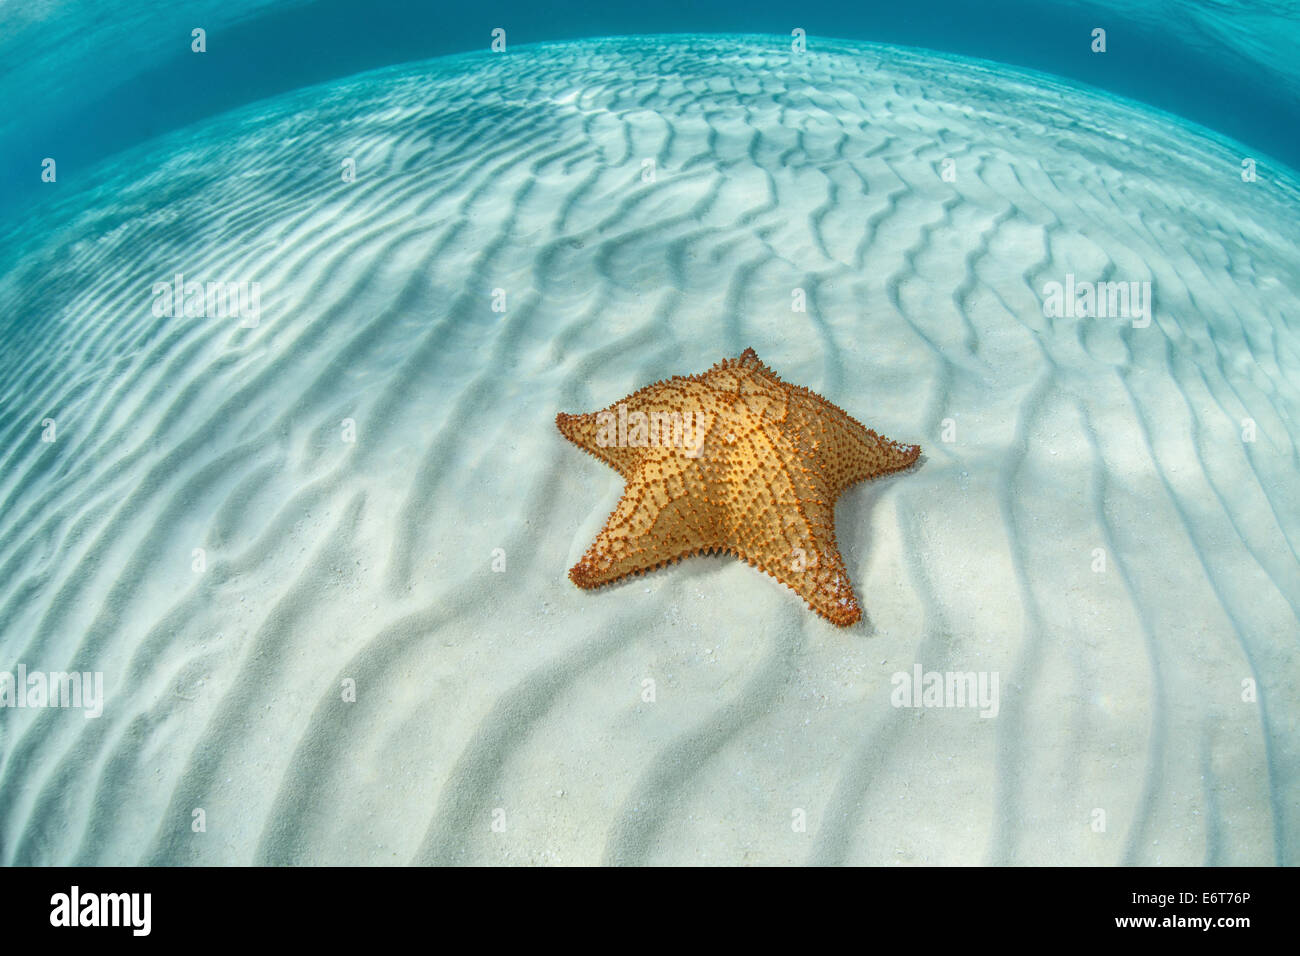 Les étoiles de mer en lagune, Oreaster reticulatus, Turneffe Atoll, des Caraïbes, le Belize Banque D'Images